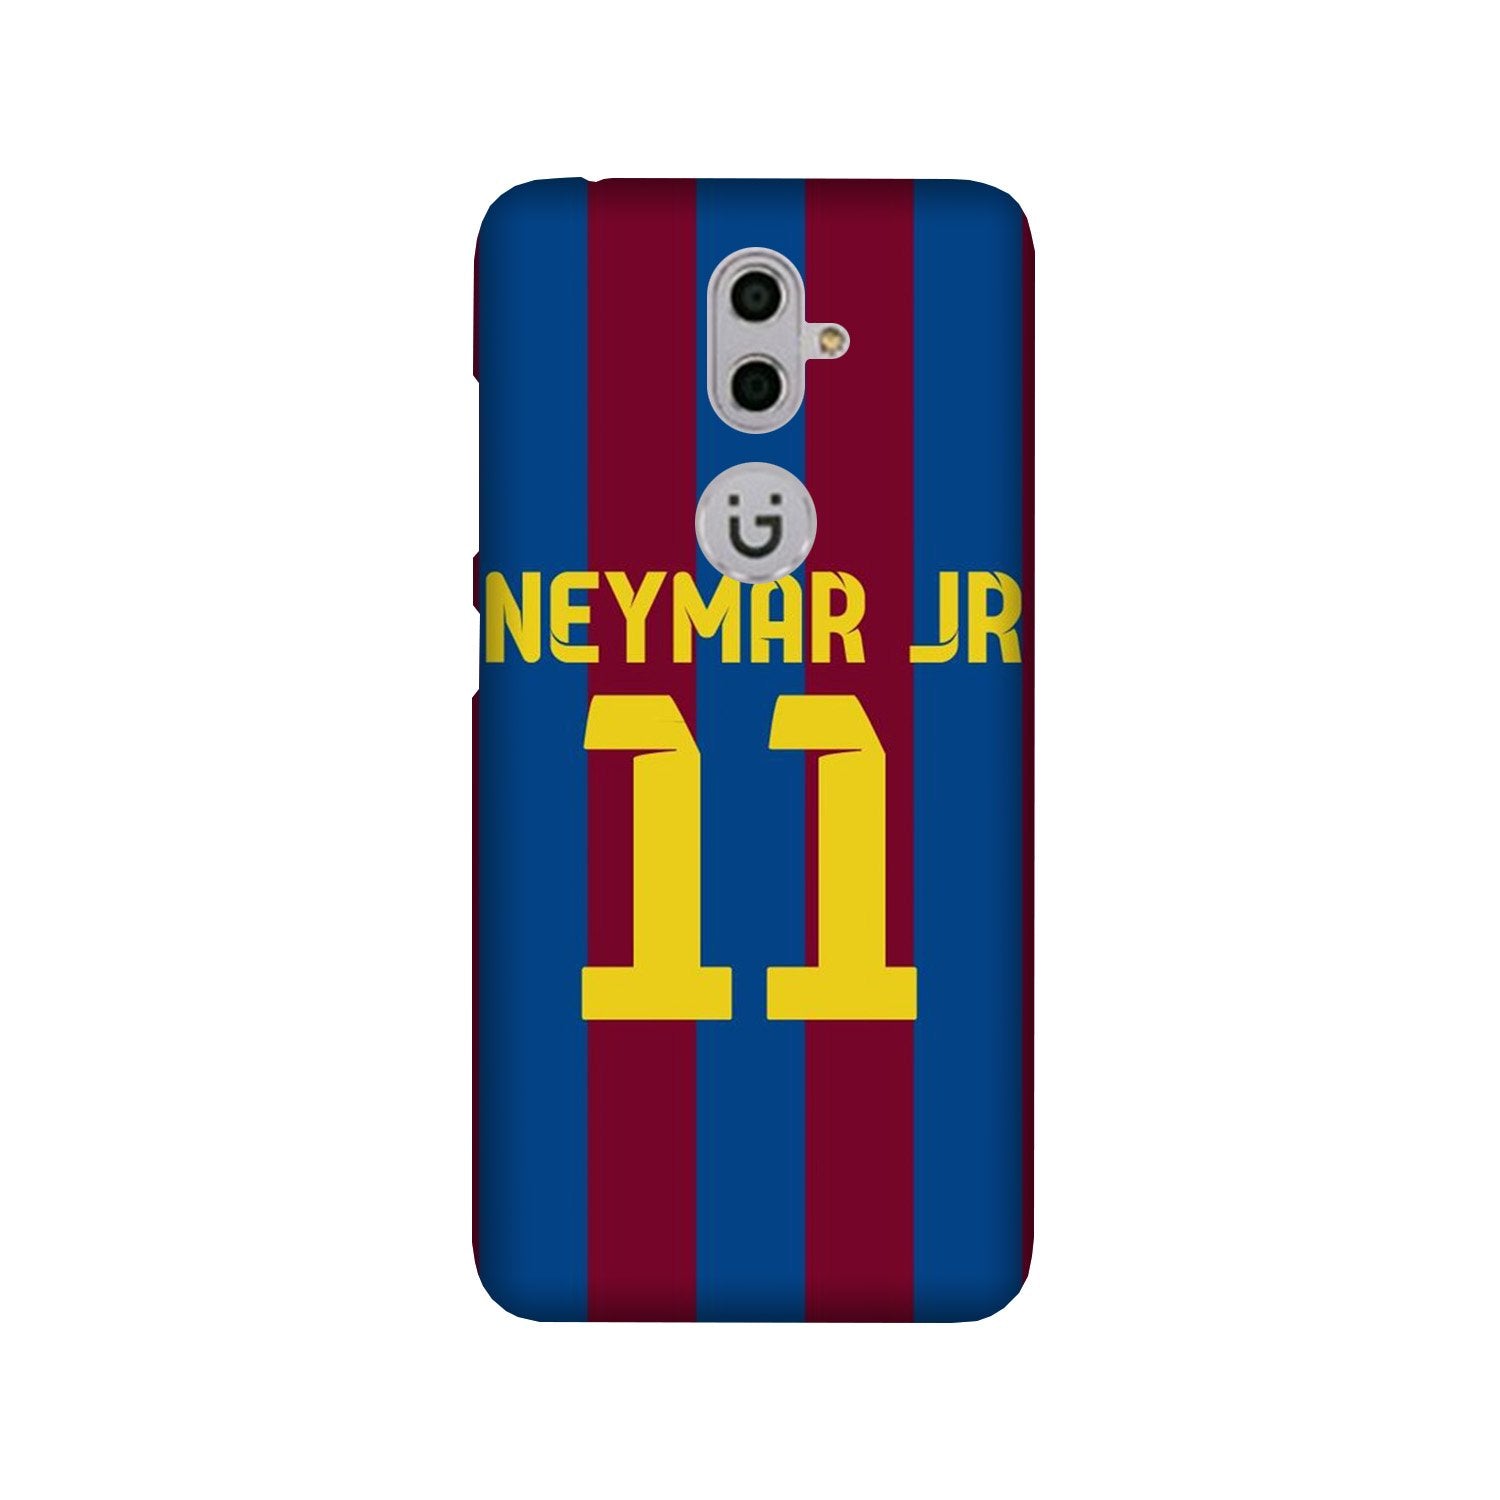 Neymar Jr Case for Gionee S9  (Design - 162)